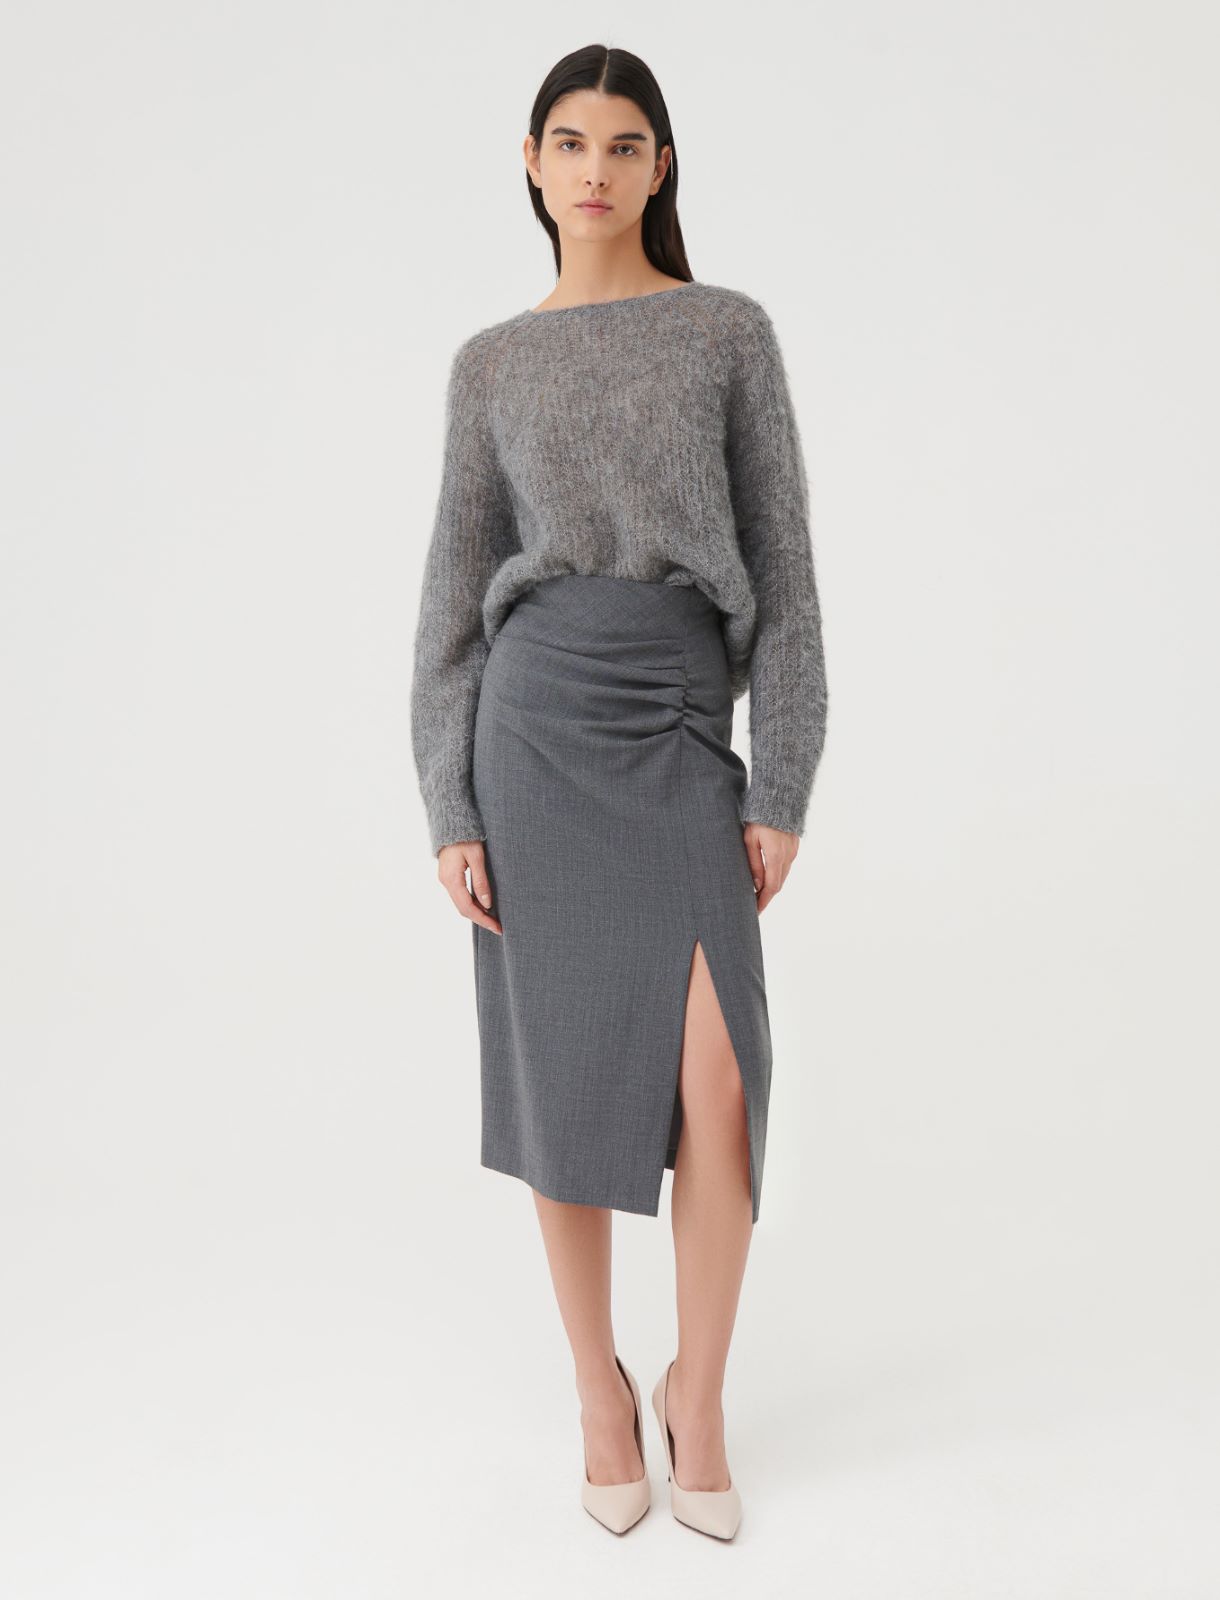 Oversized sweater - Melange grey - Marella